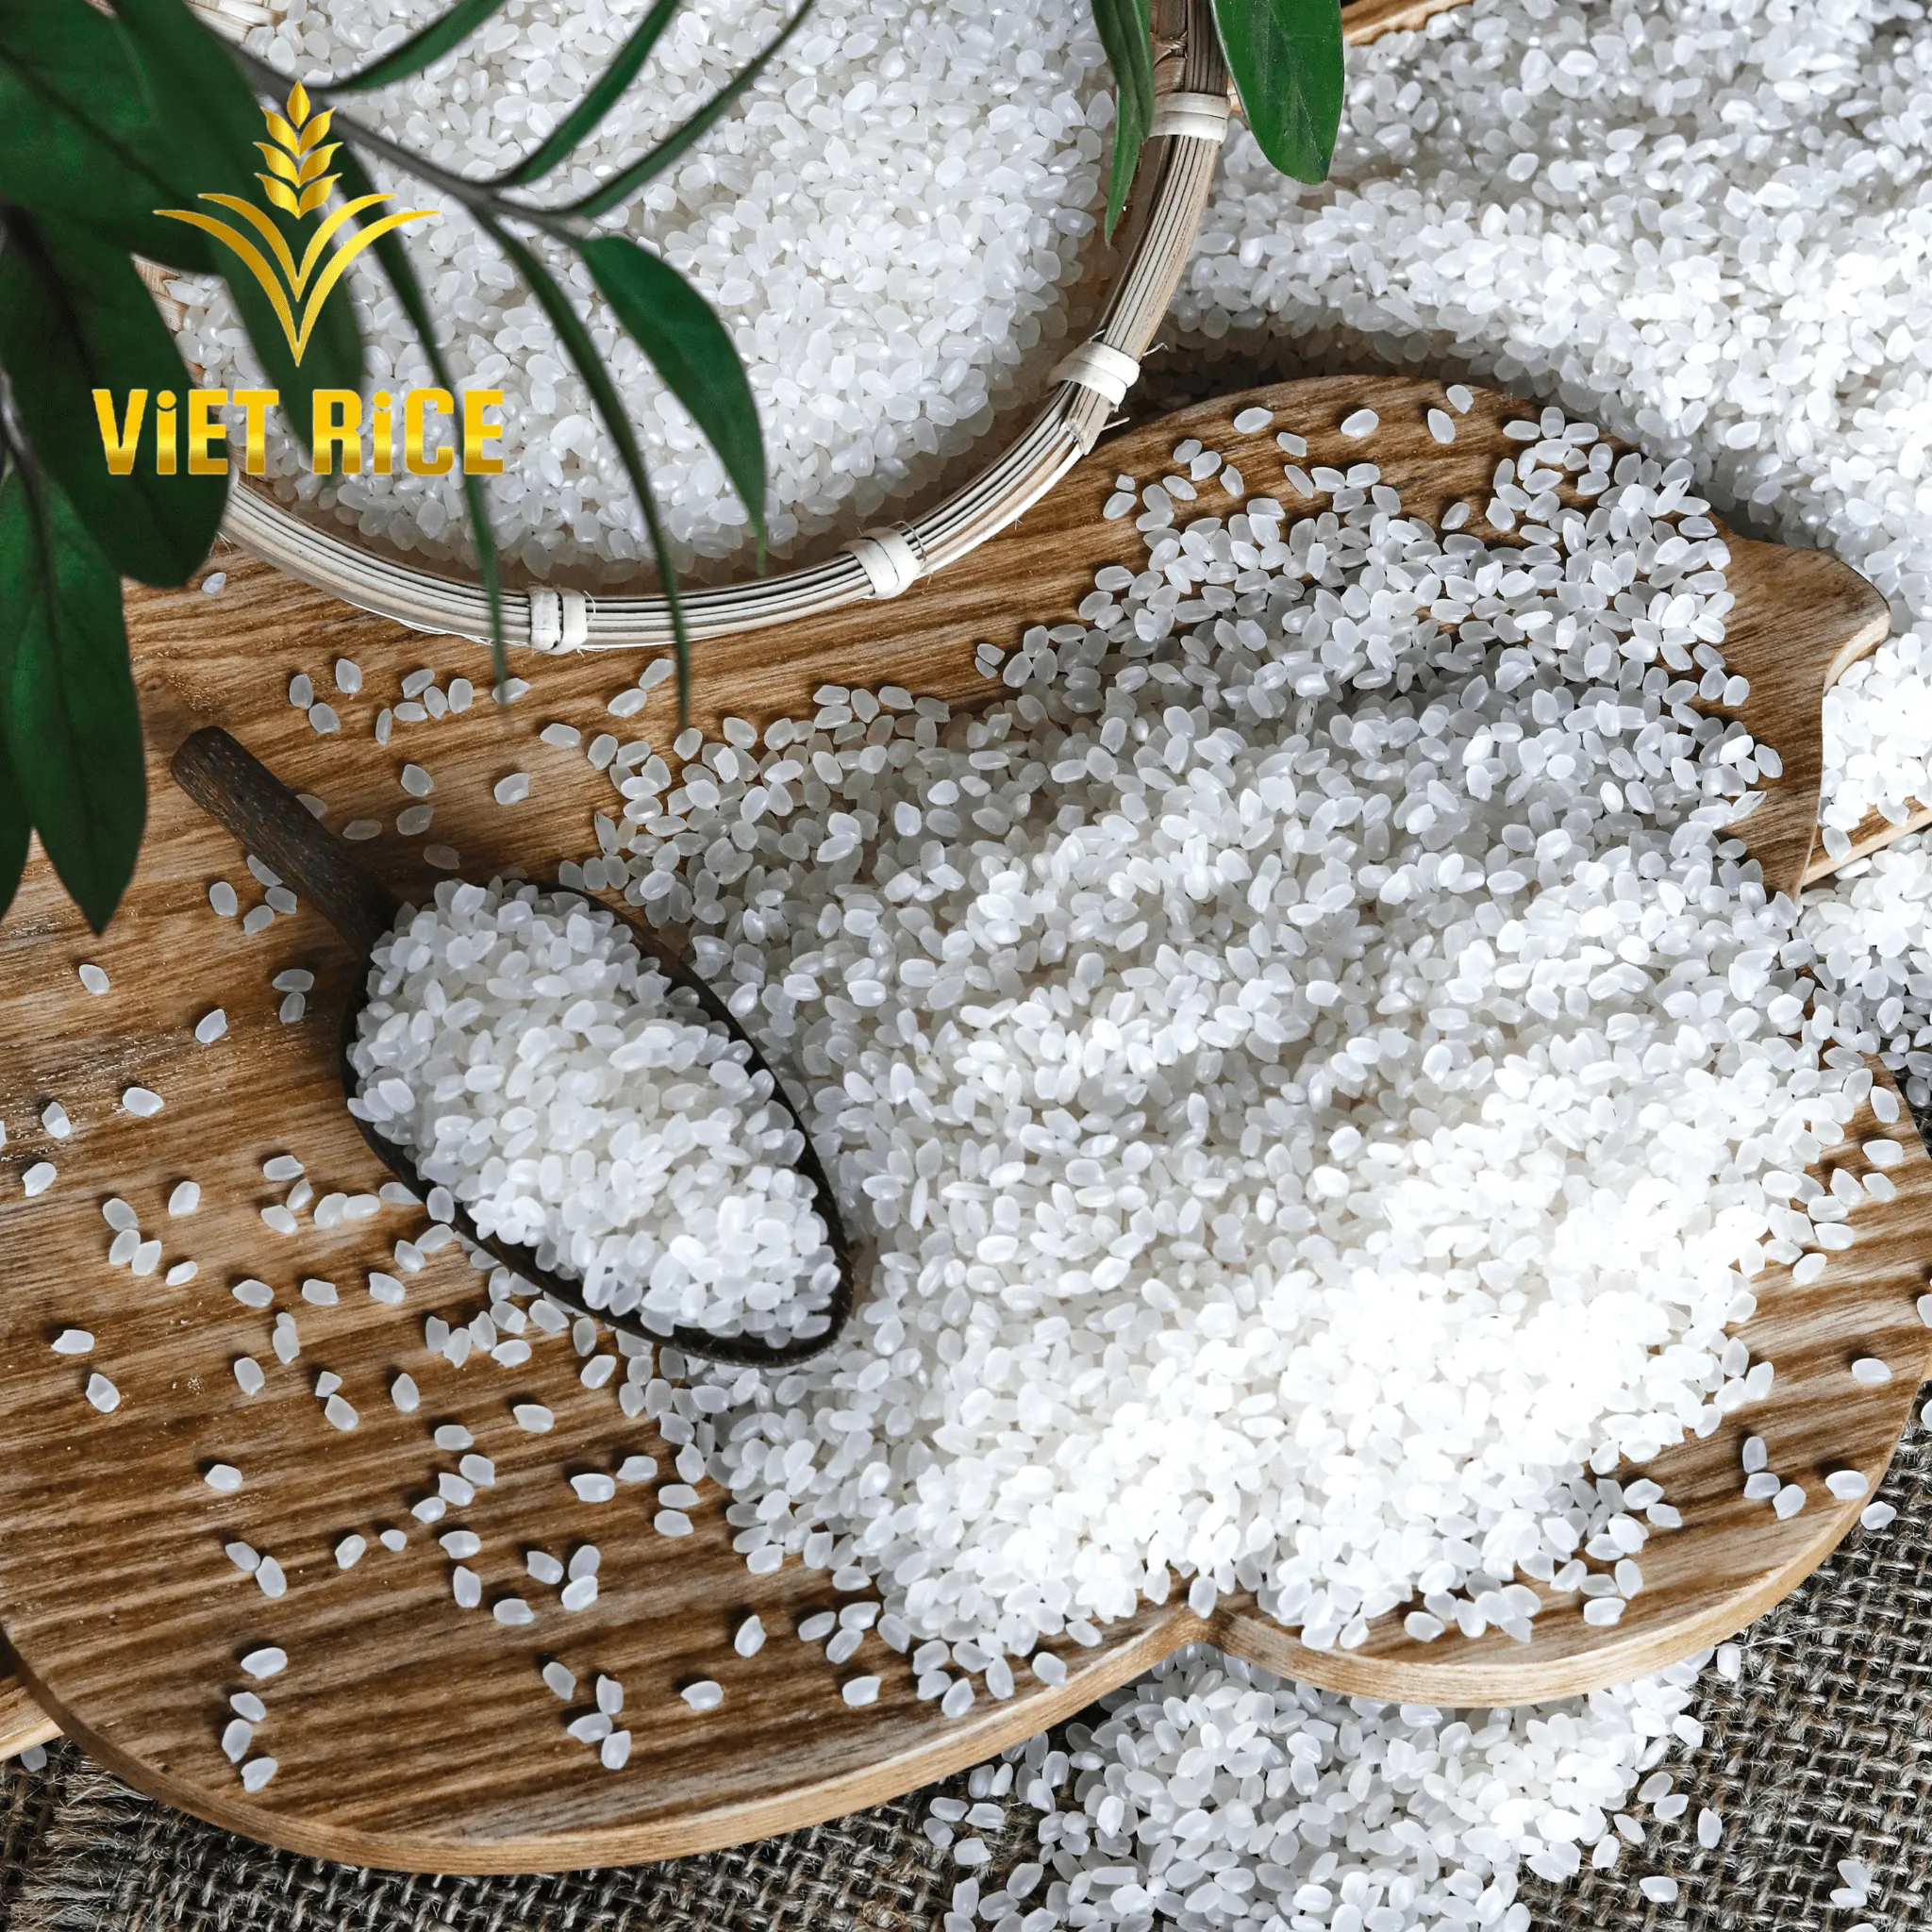 Japonica Trắng 5% tấm gạo chất lượng cao tiêu chuẩn quốc tế với cerfiticate ISO : 9001 và trước hệ thống sản xuất